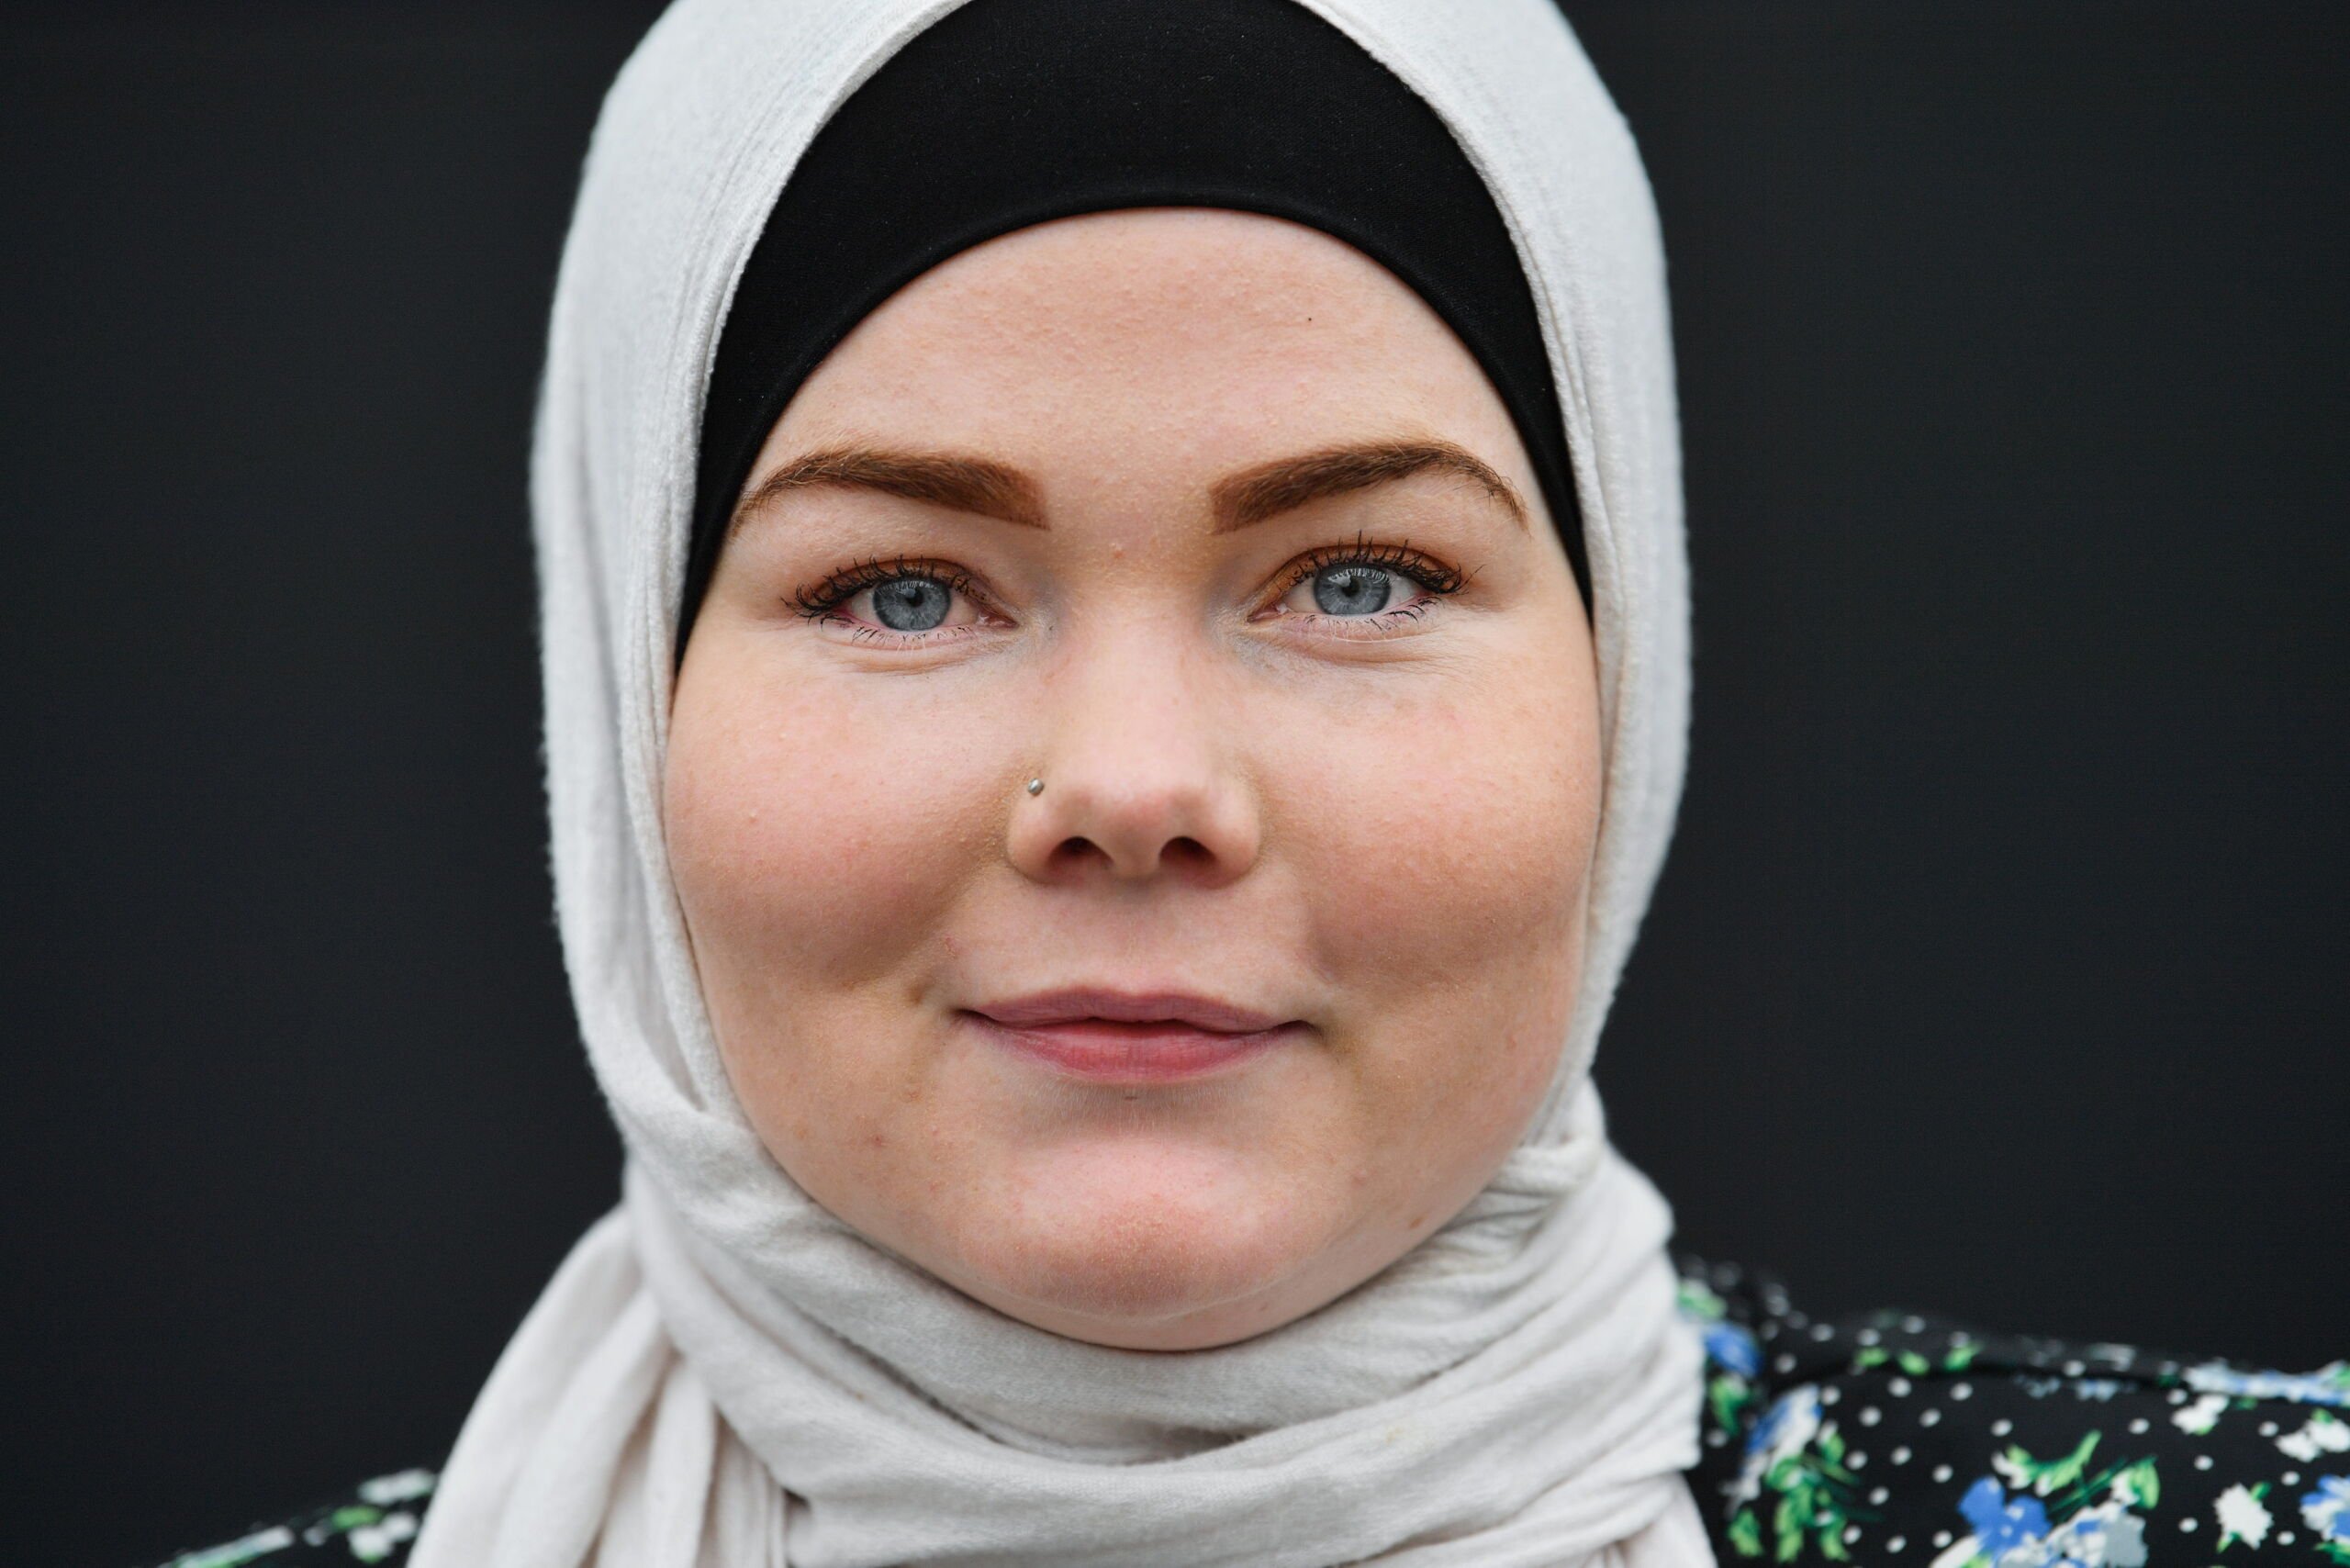 23-årige Ida er muslim: - Jeg har fundet en ro og mening med mit liv | Nordjyske.dk